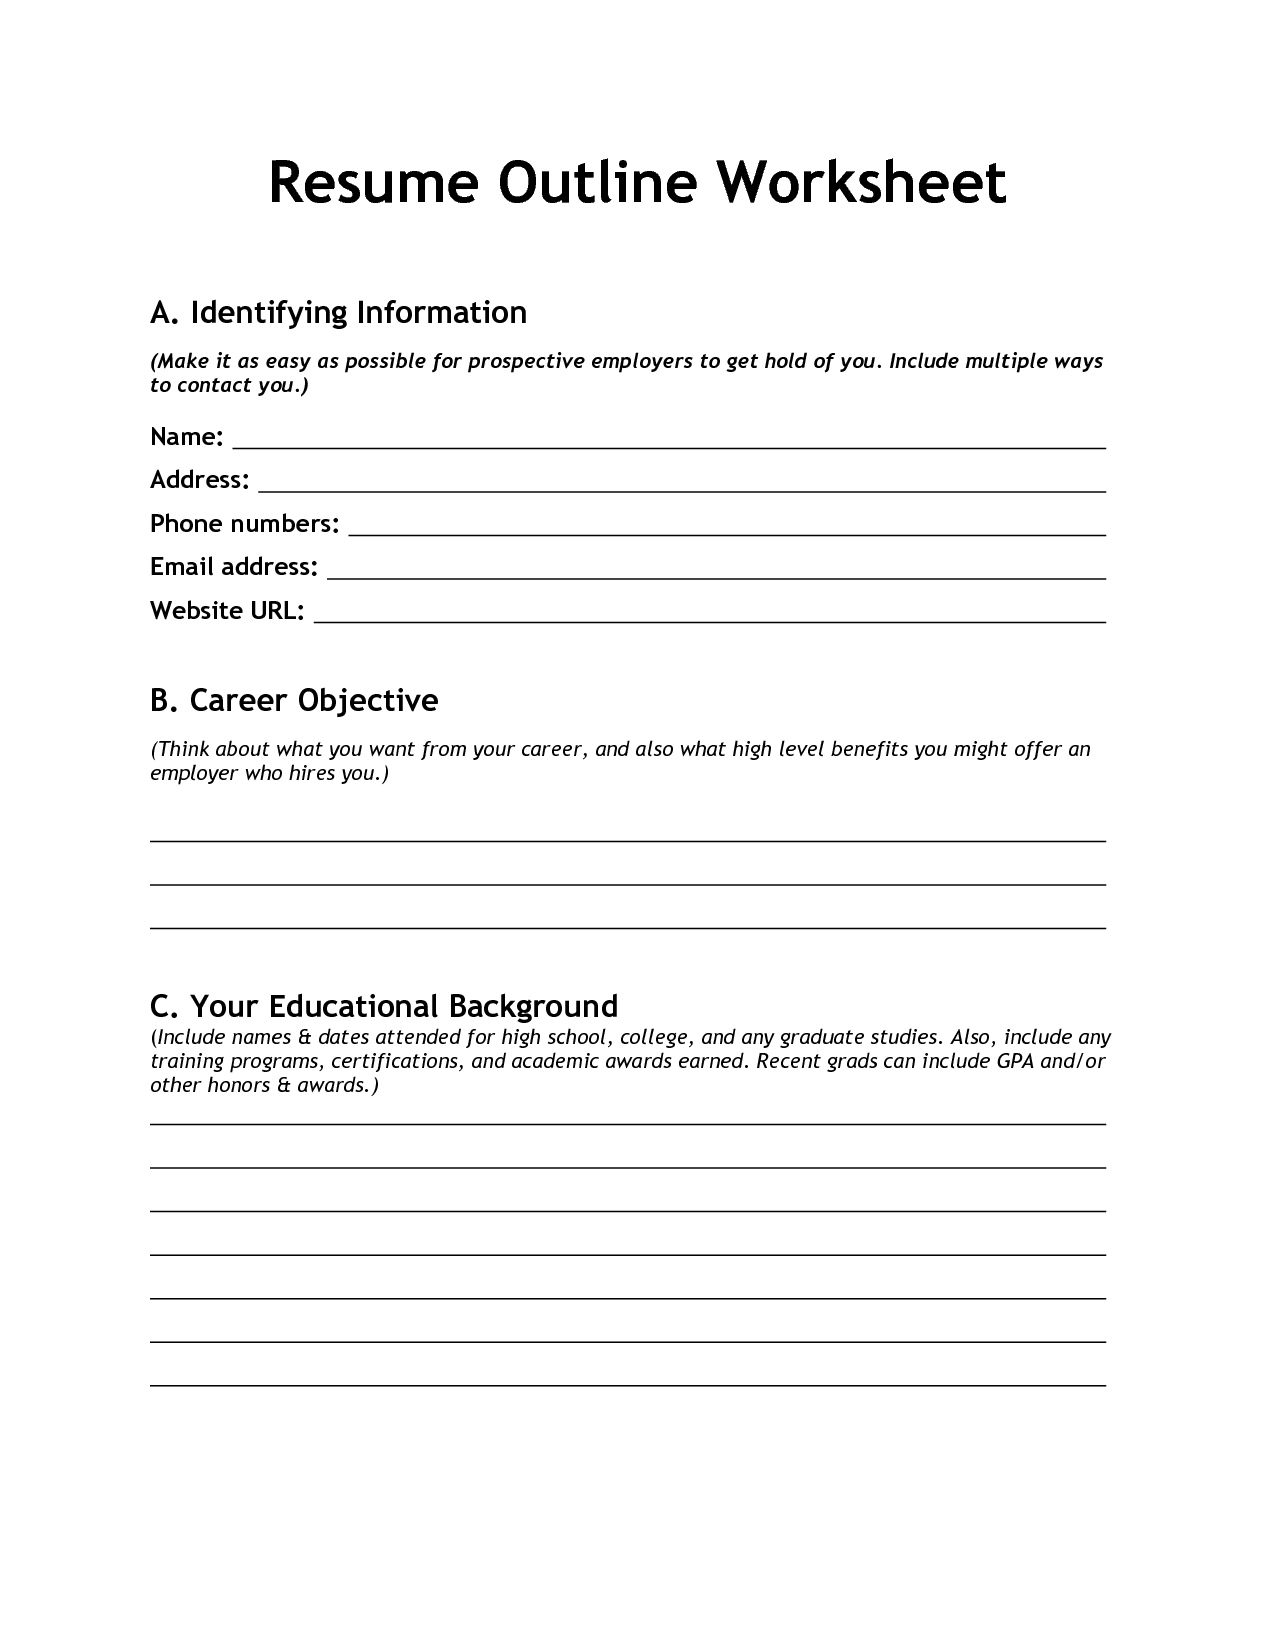 10-blank-resume-template-worksheet-worksheeto